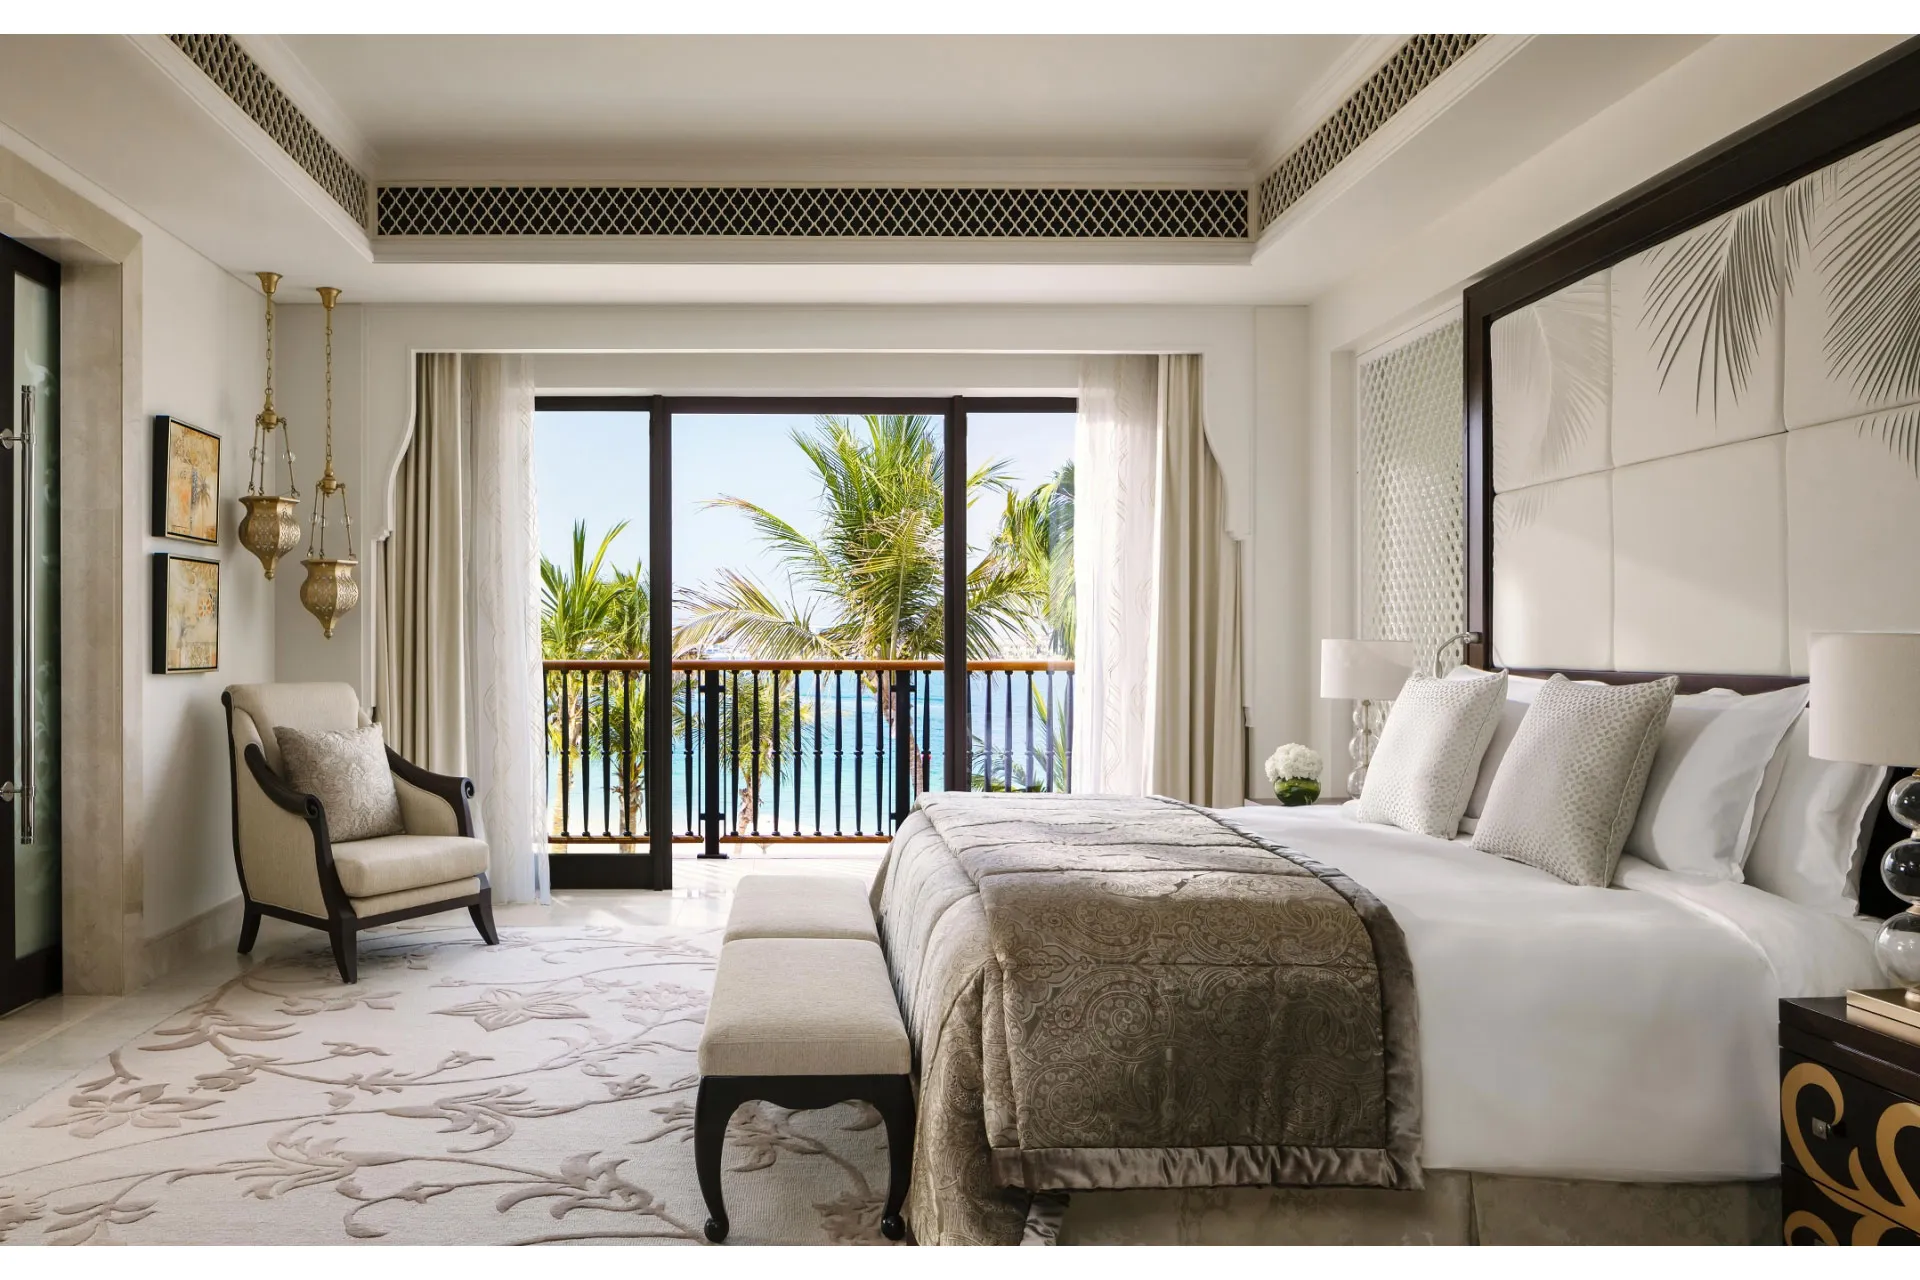 Suite mit Balkon und Palmen vor den Fenstern